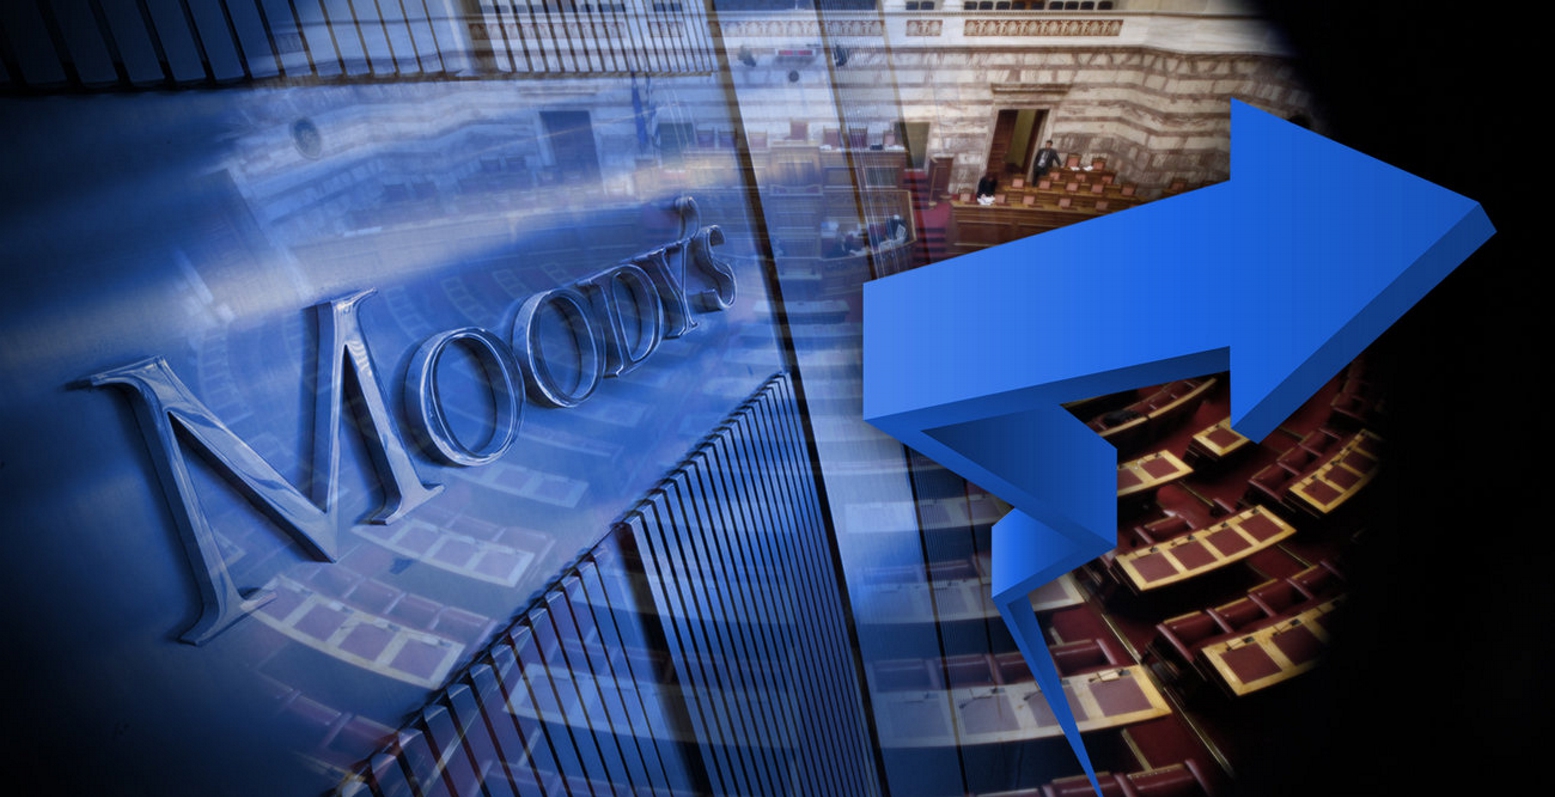 Акра рейтинговое агентство сайт. Рейтинговое агентство Moody's. Международные рейтинговые агентства. Рейтинговые агентства Moodys. Агентство Мудис.